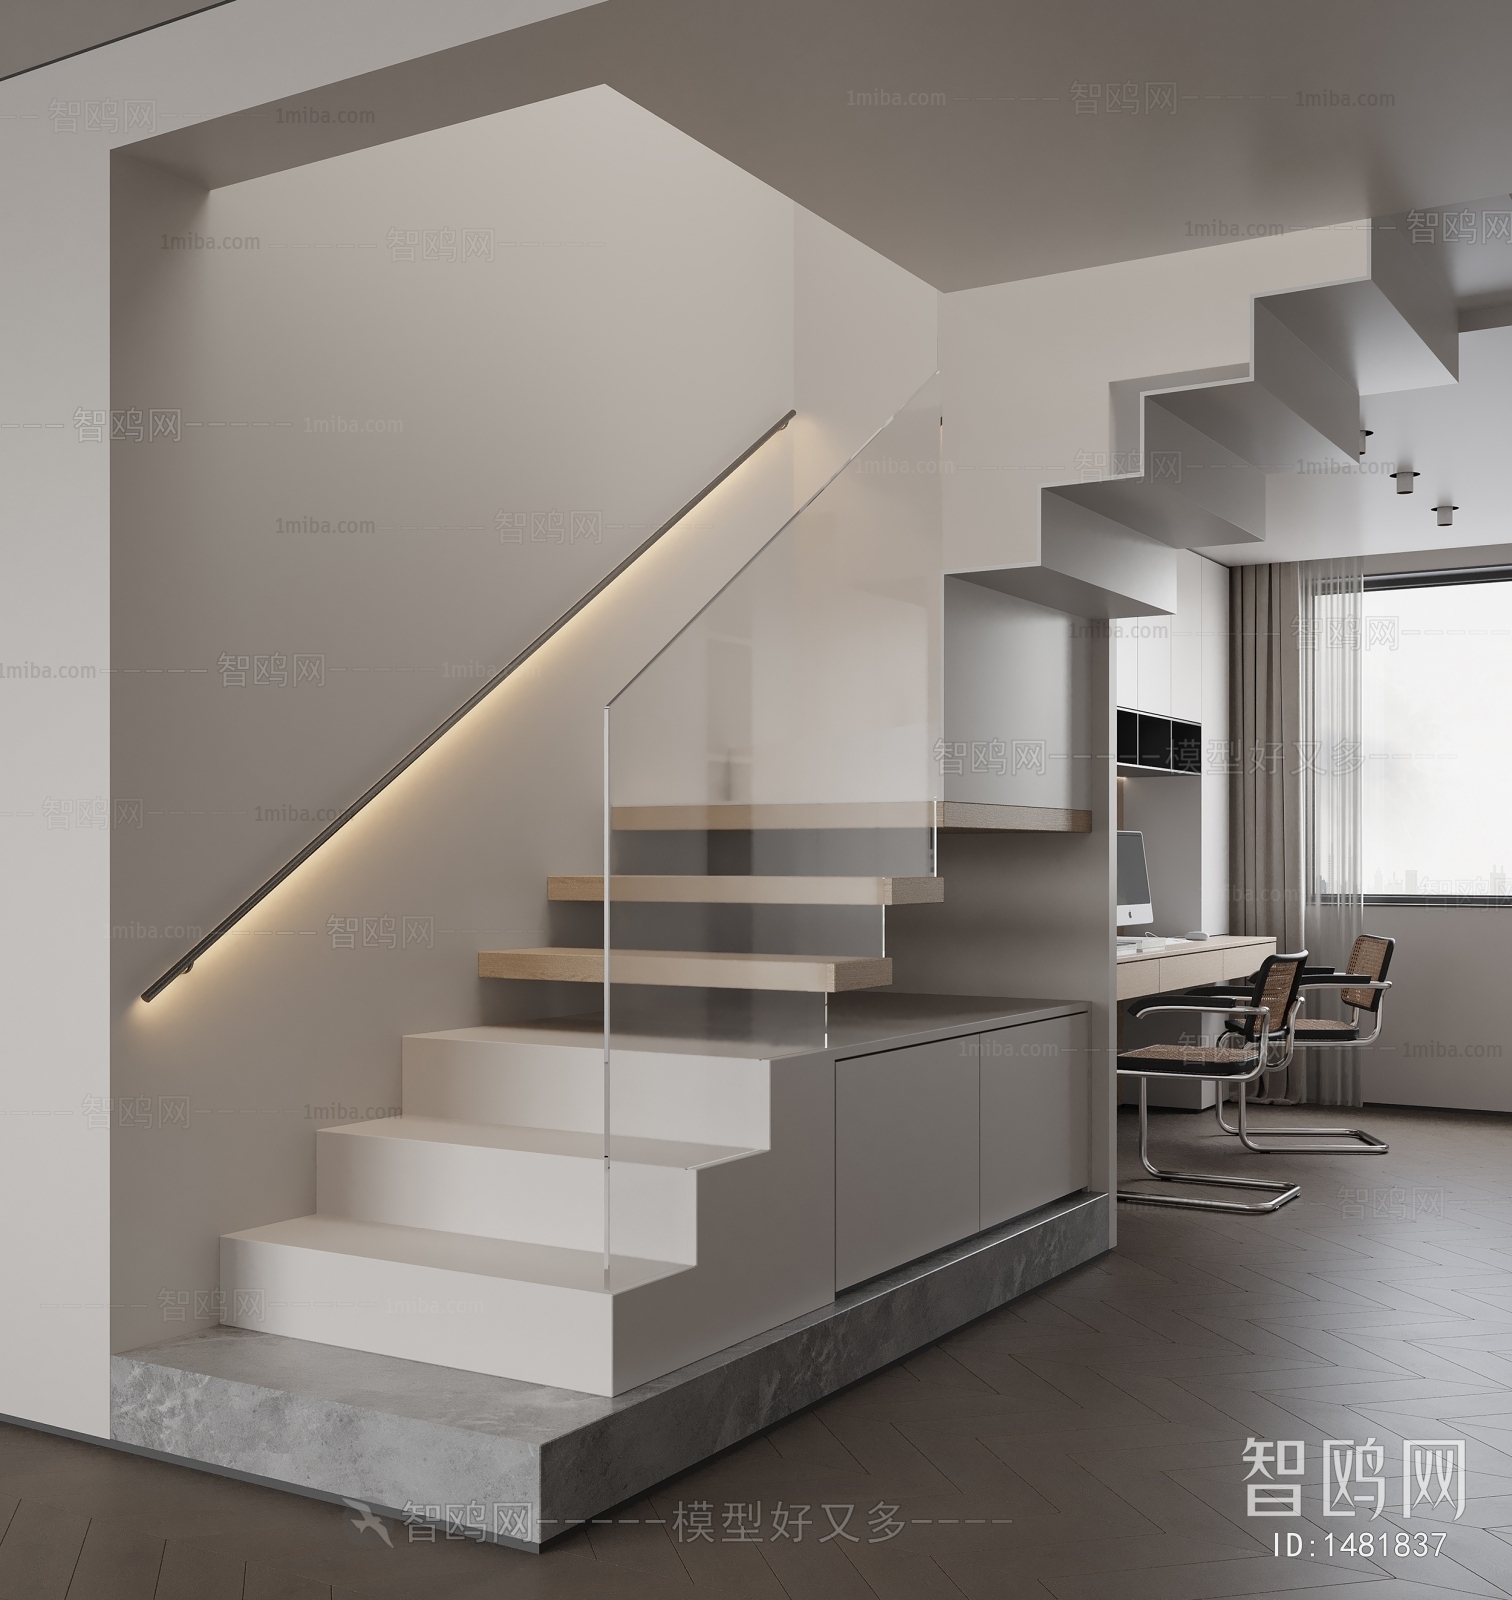 Modern Stairwell